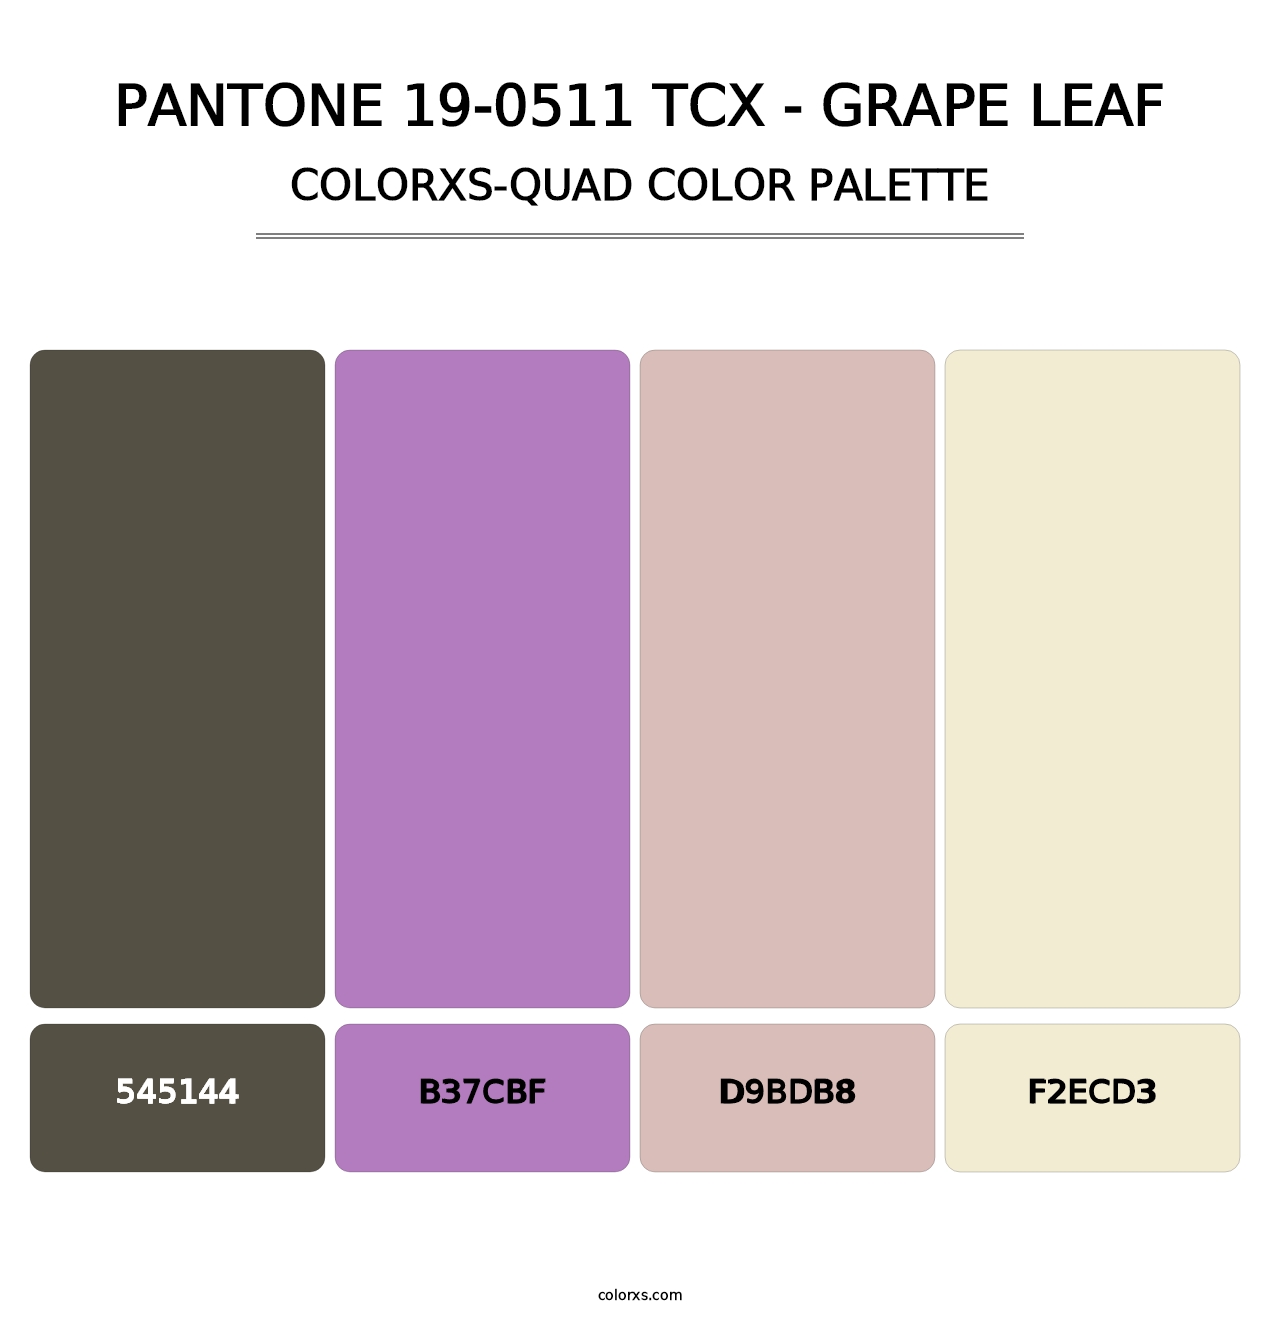 PANTONE 19-0511 TCX - Grape Leaf - Colorxs Quad Palette